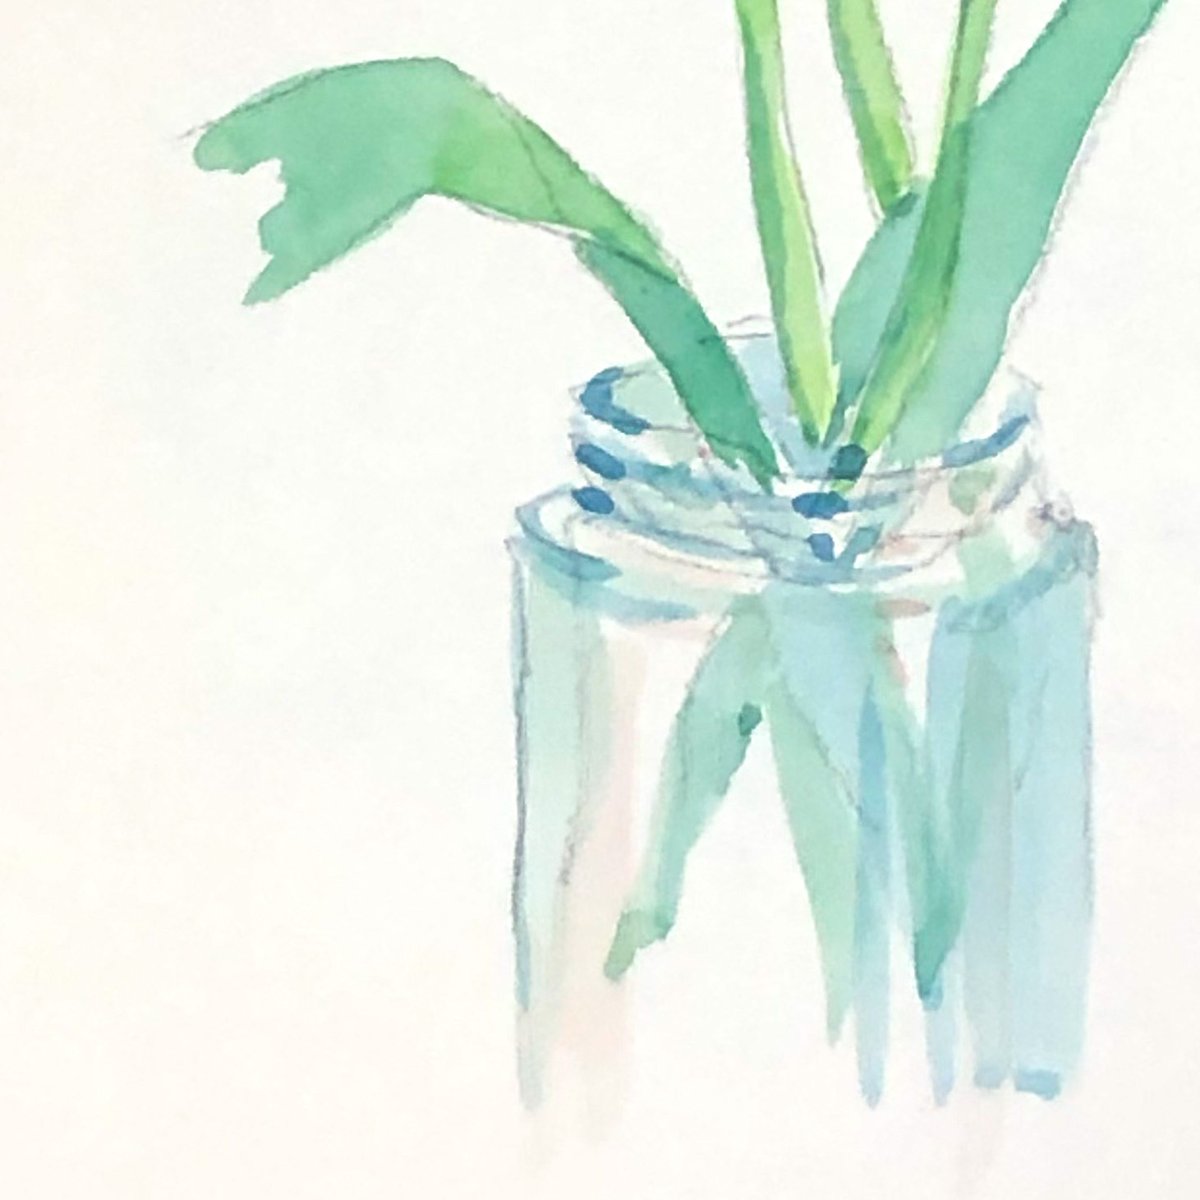 「【過去絵シリーズ】花瓶

いや、本当は花を描いたんですがね。
うまく描けなかった」|詩月あき_しづきあきのイラスト